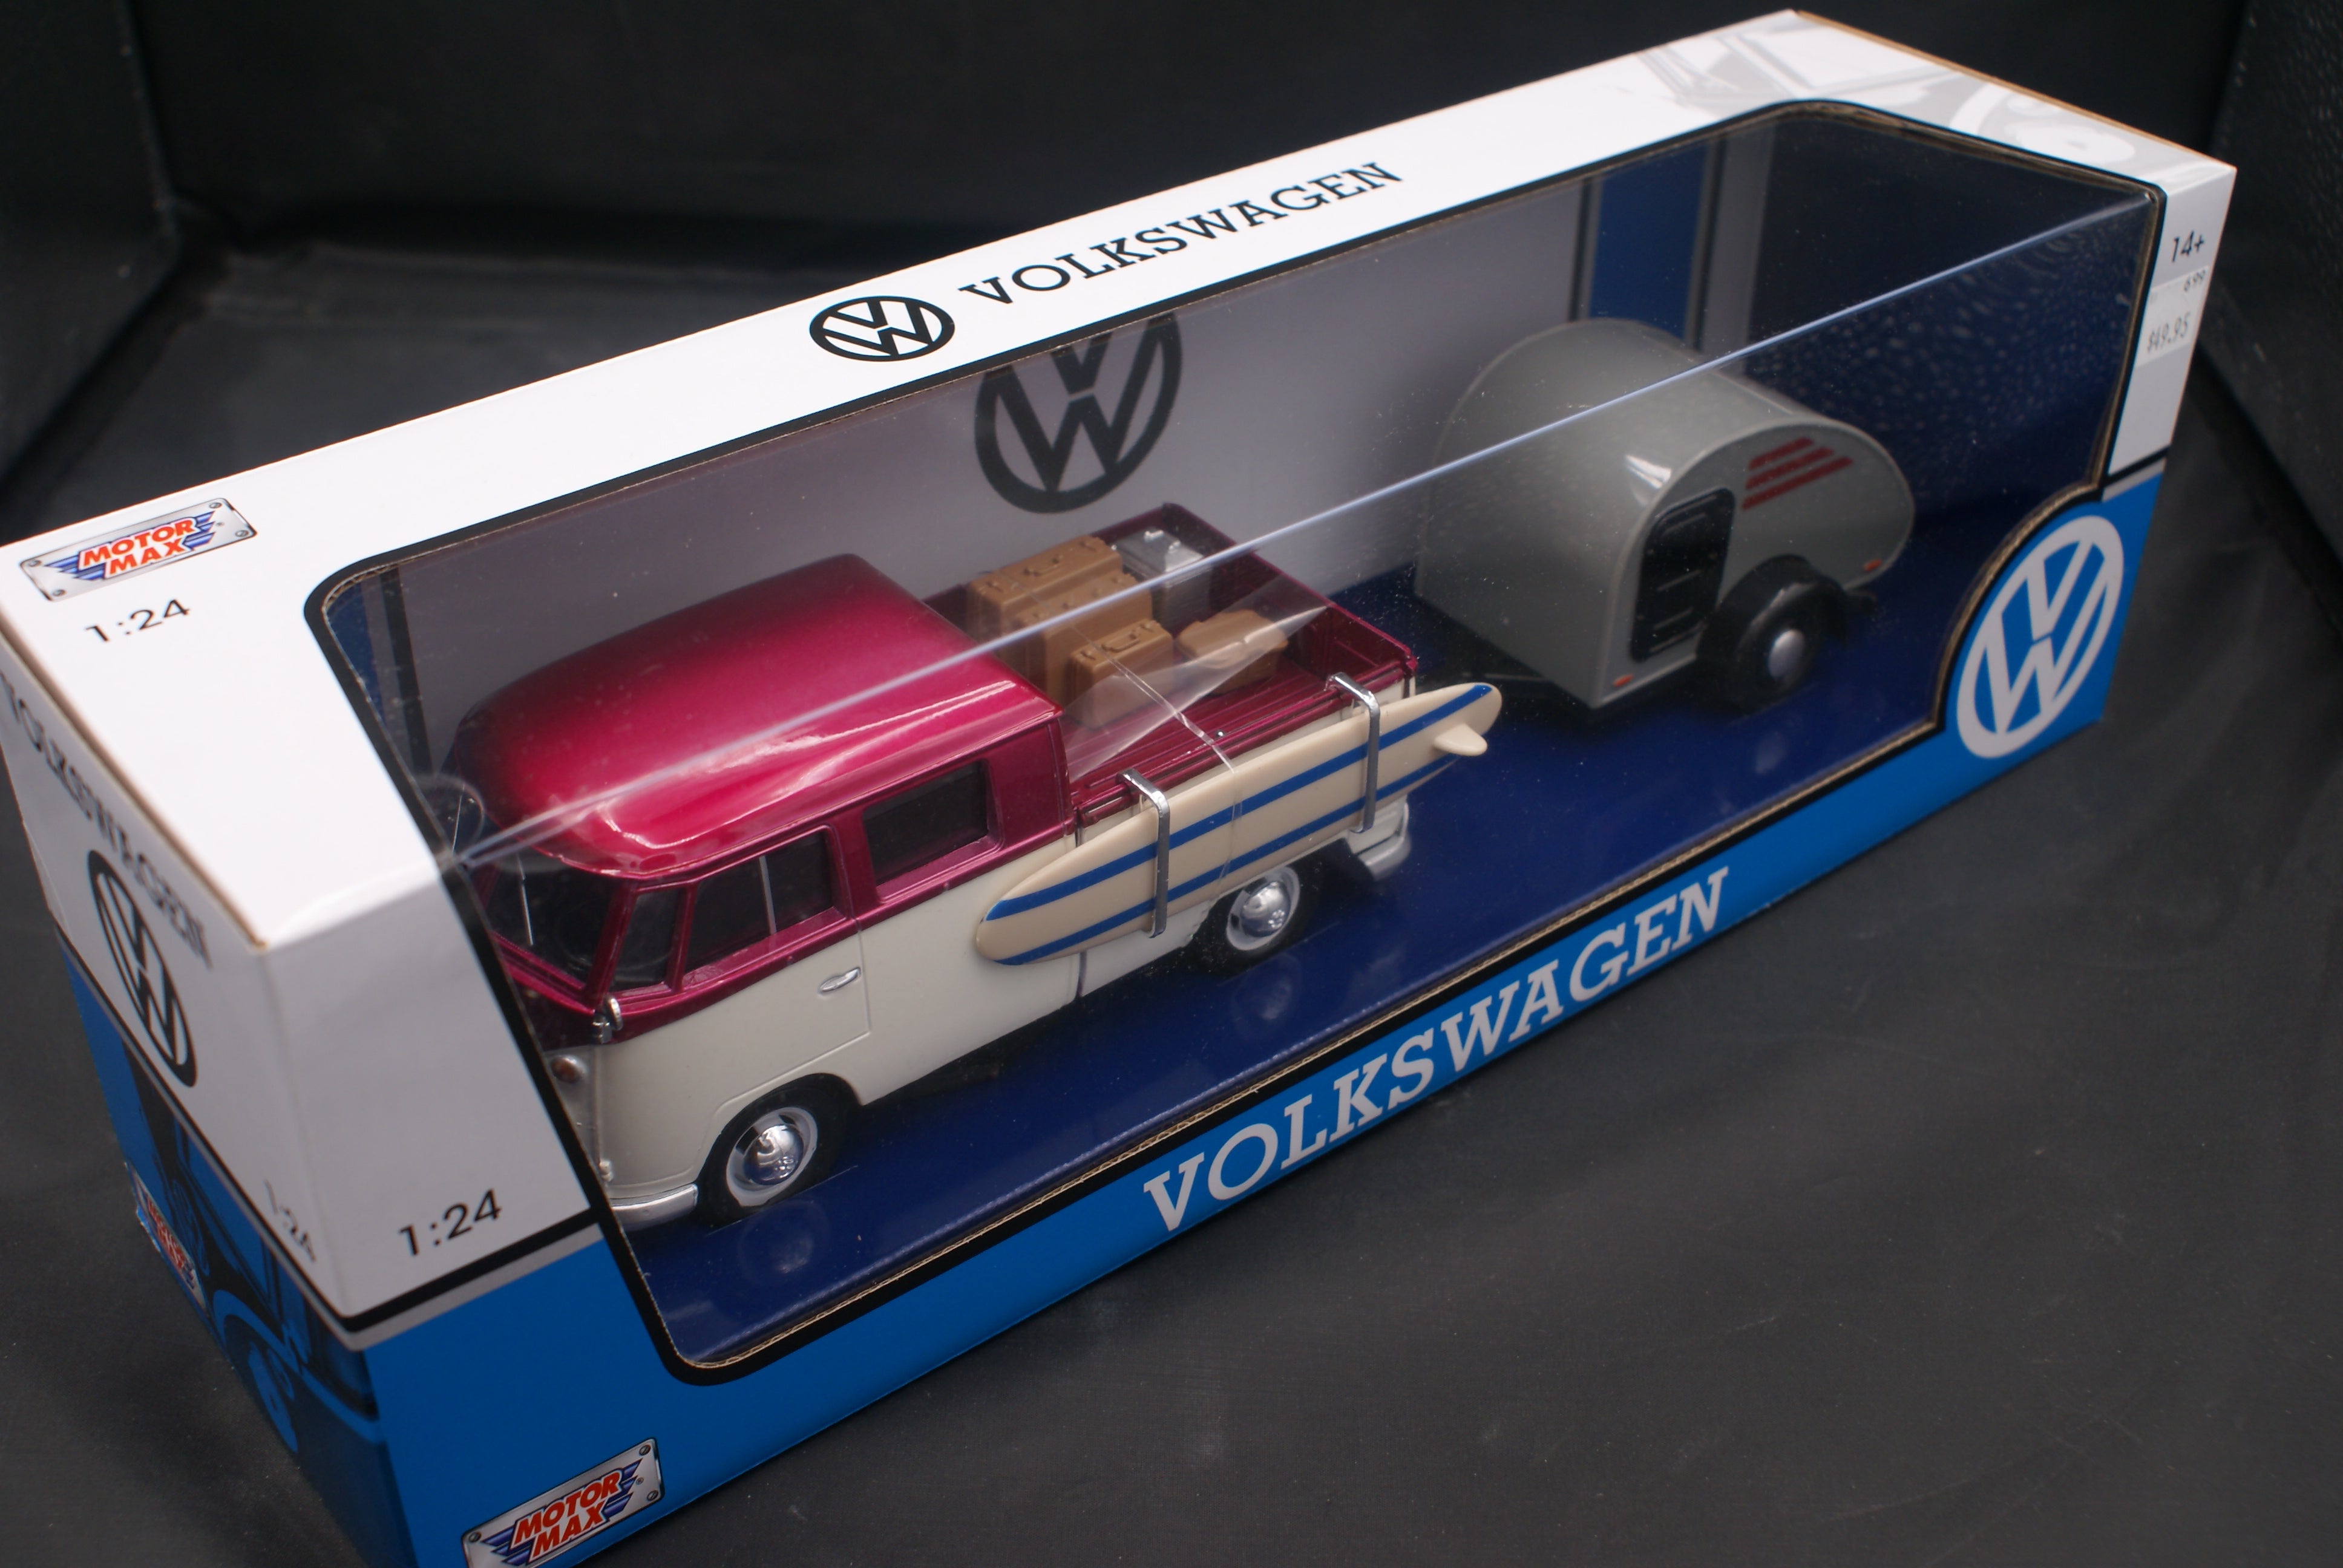 Volkswagen Pickup with trailer